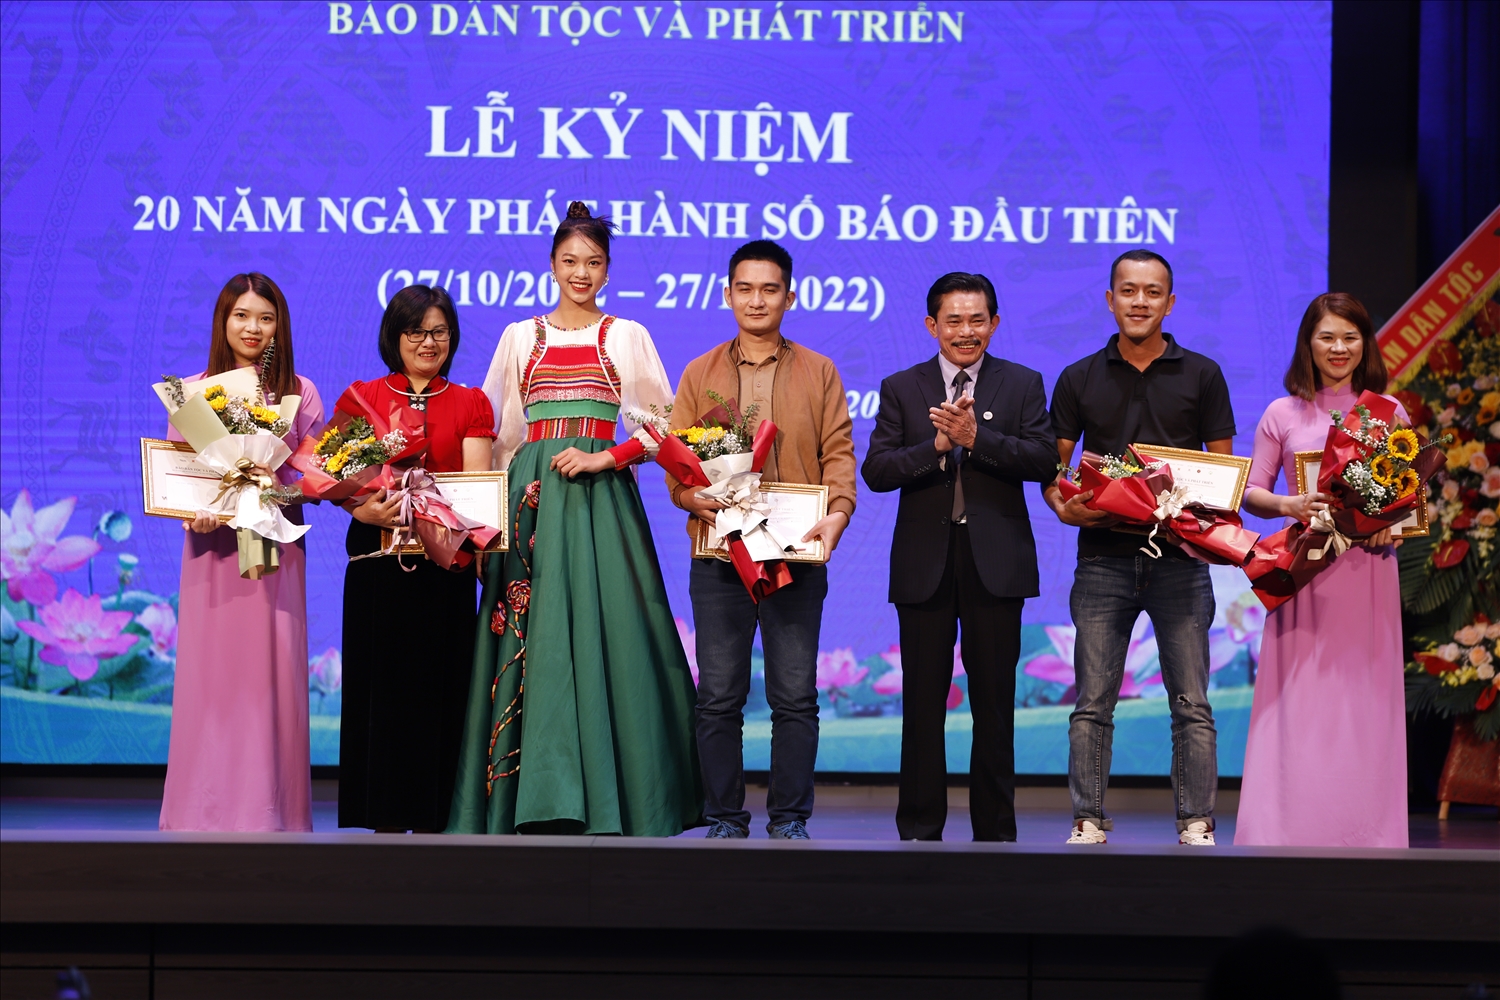 Ban Tổ chức cũng đã công bố và trao giải cho các tác phẩm đạt giải của cuộc thi ảnh và video online “Sắc màu Việt Nam – Những chặng đường ta qua” do Báo Dân tộc và Phát triển tổ chức